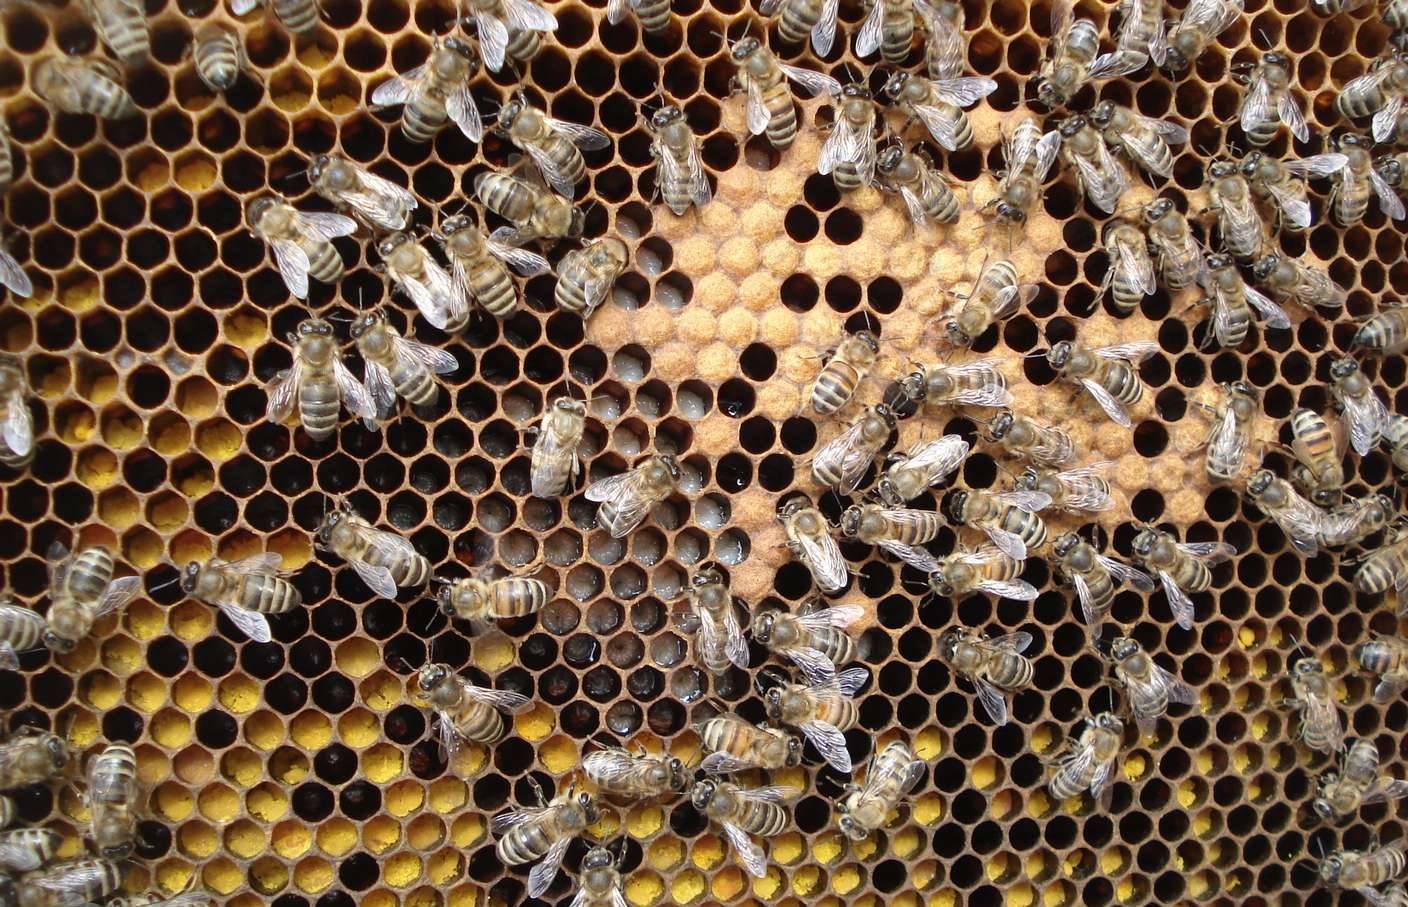 Личинки пчел и молодые пчелы: как выглядят, в чем особенности их развития и польза?